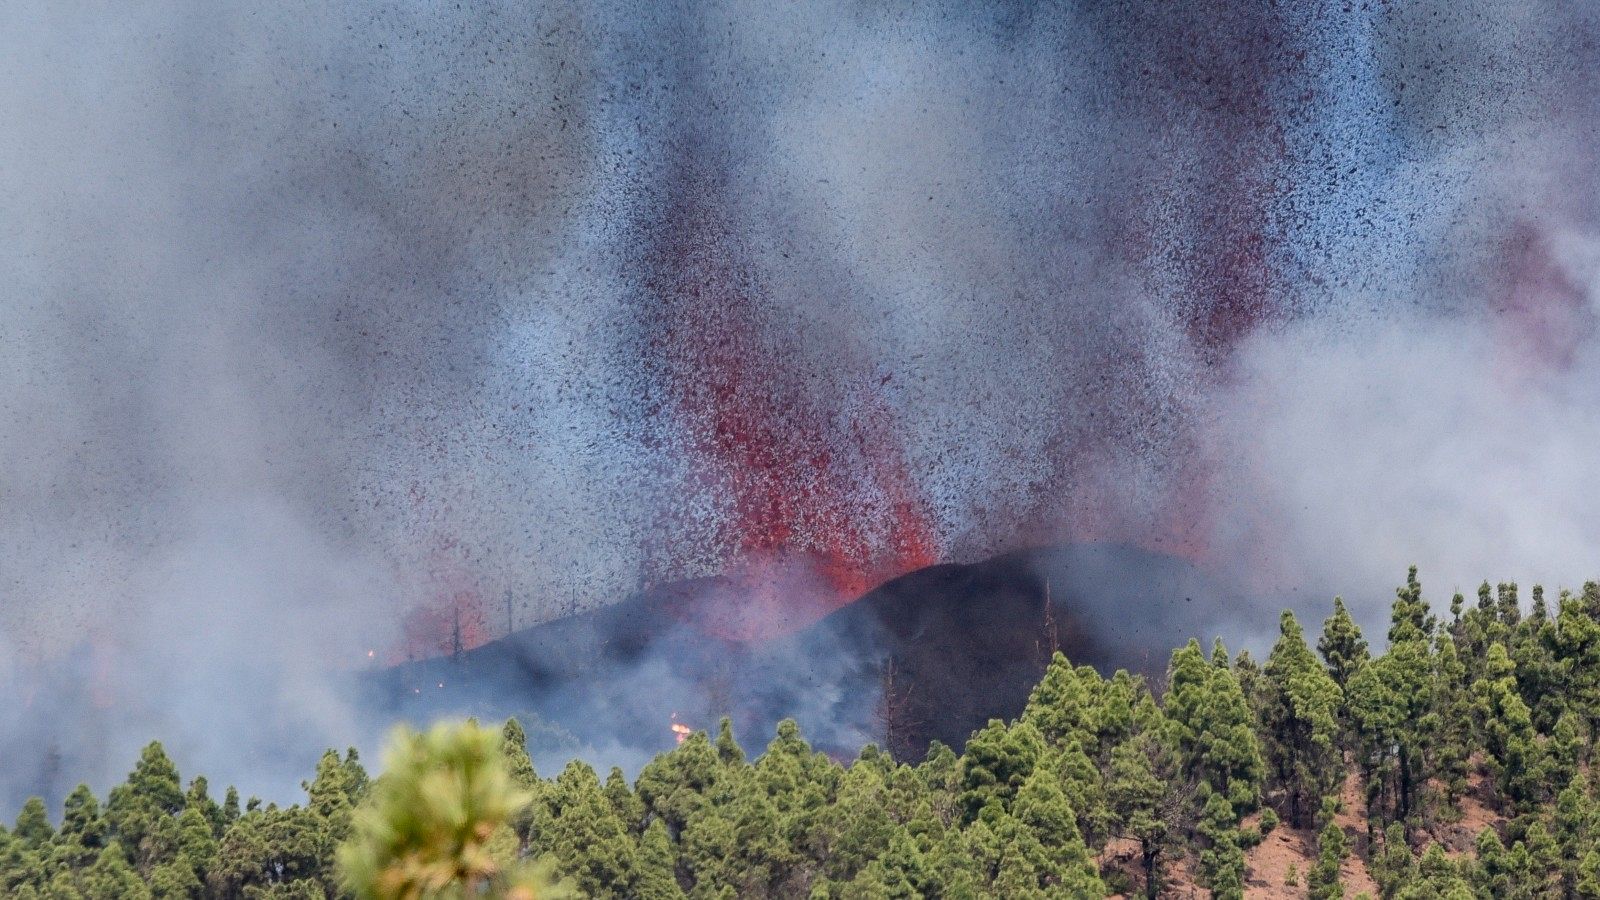 Instituto Volcanológico de Canarias: "Es una erupción estromboliana que emite fuentes de lava y piroclastos"